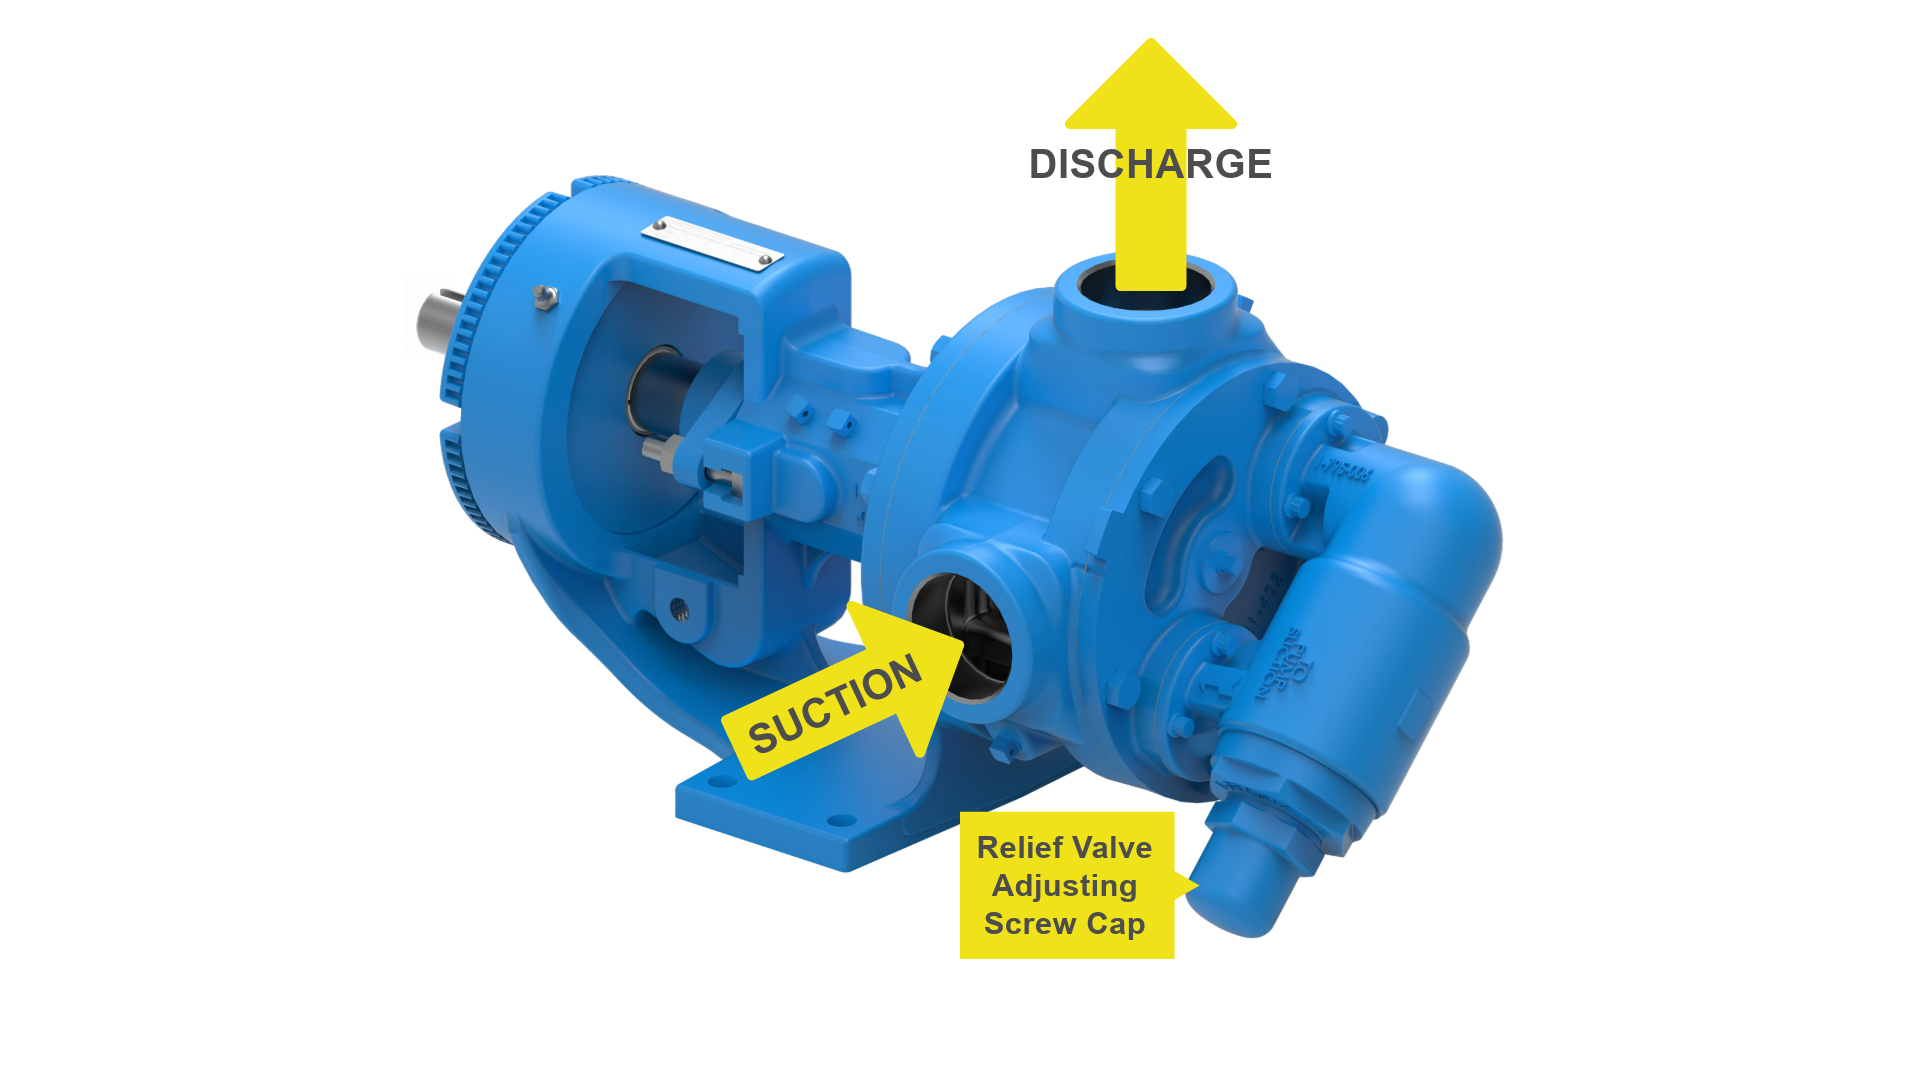 Figure 4 - Proper orientation of the internal relief valve on an internal gear pump